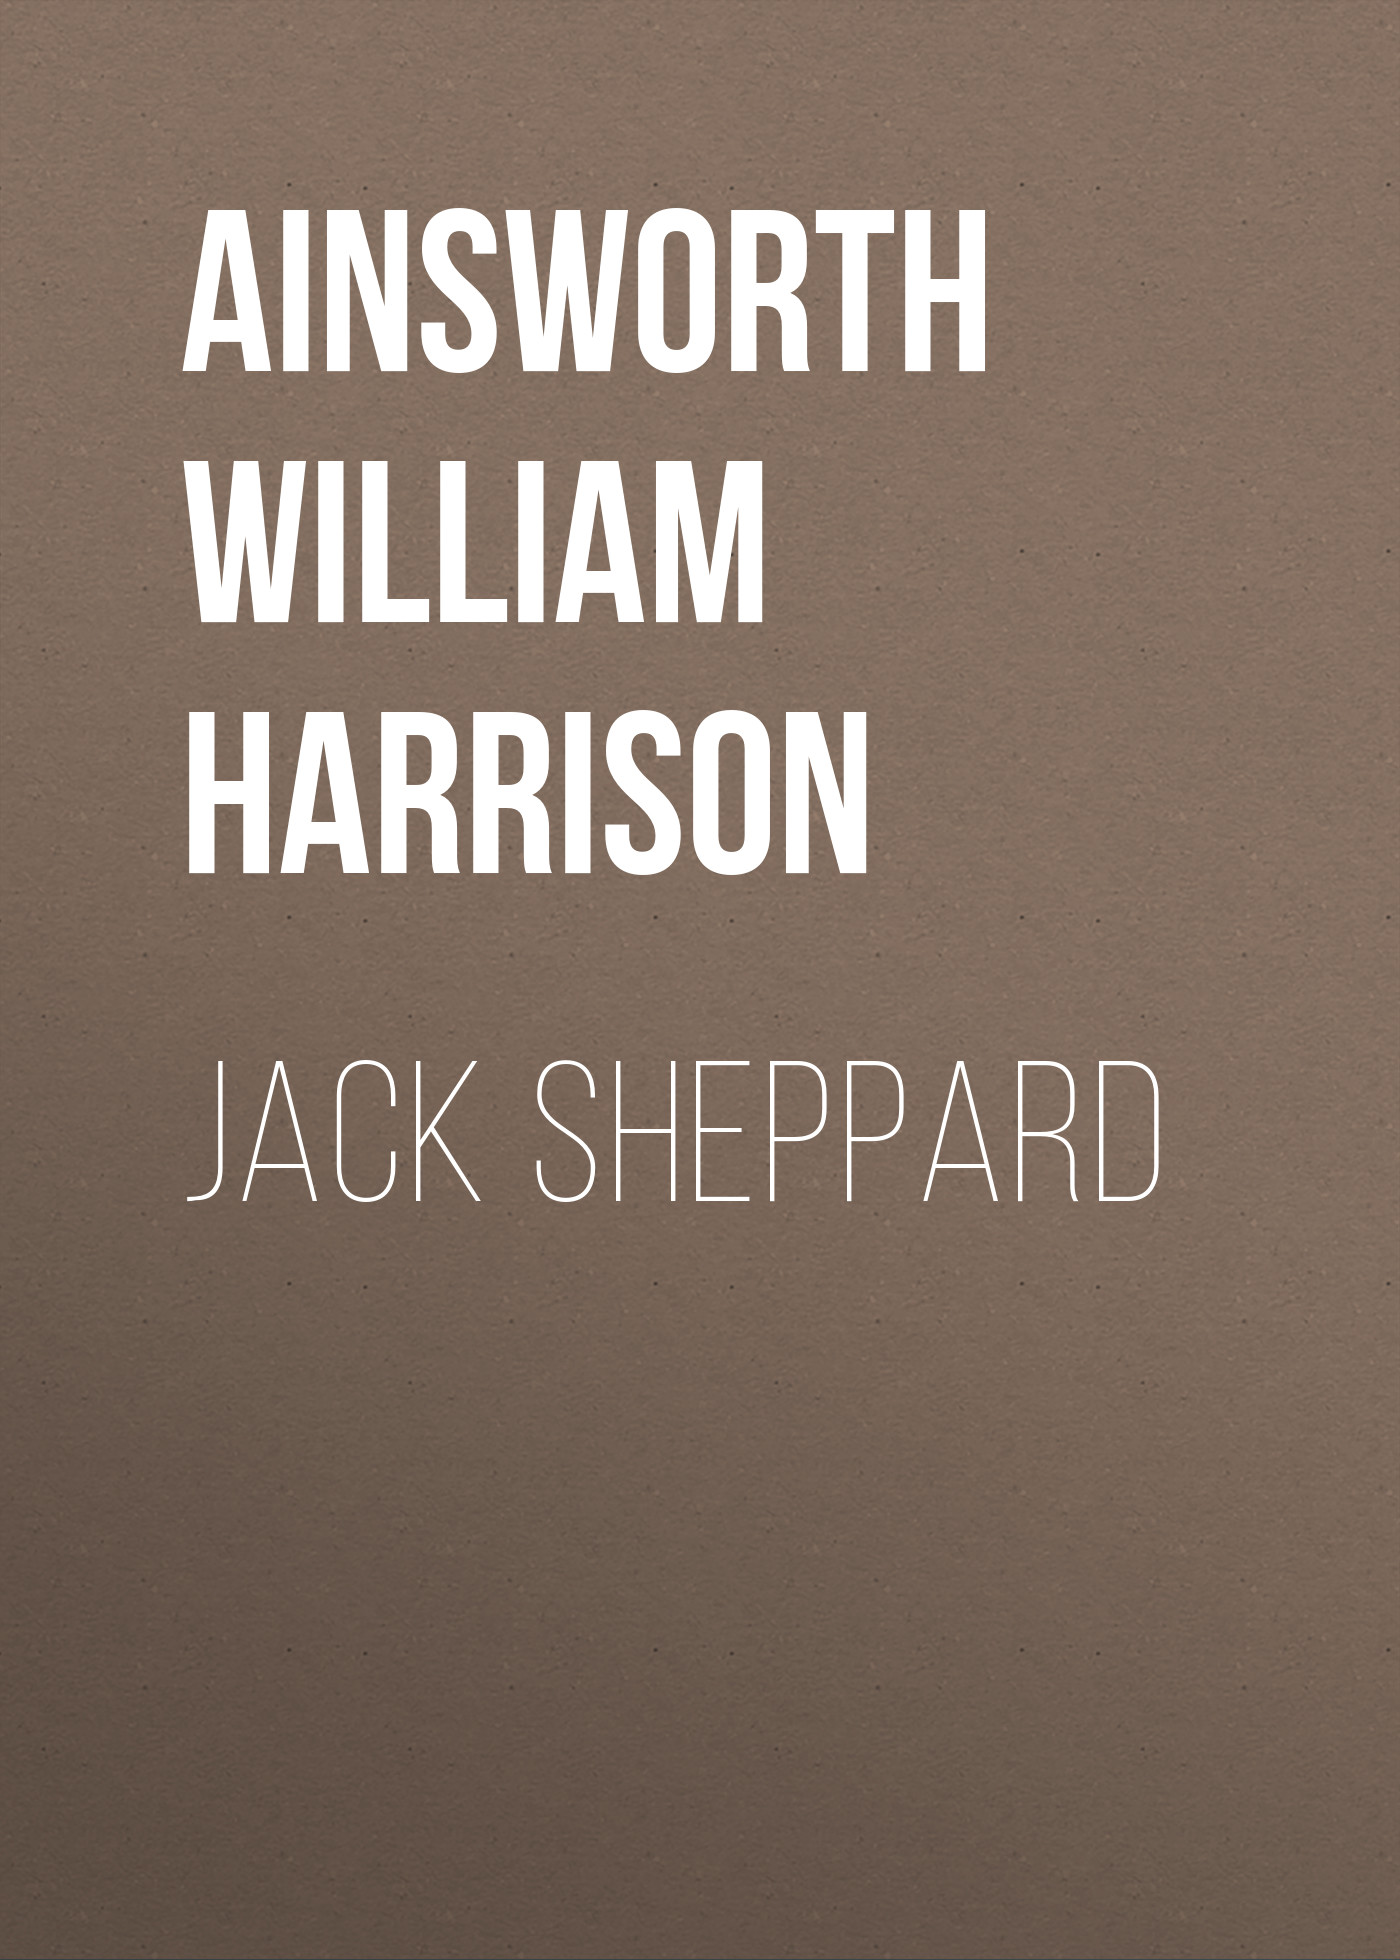 Книга Jack Sheppard из серии , созданная William Ainsworth, может относится к жанру Зарубежная классика, Литература 19 века, Европейская старинная литература. Стоимость электронной книги Jack Sheppard с идентификатором 36365398 составляет 0 руб.